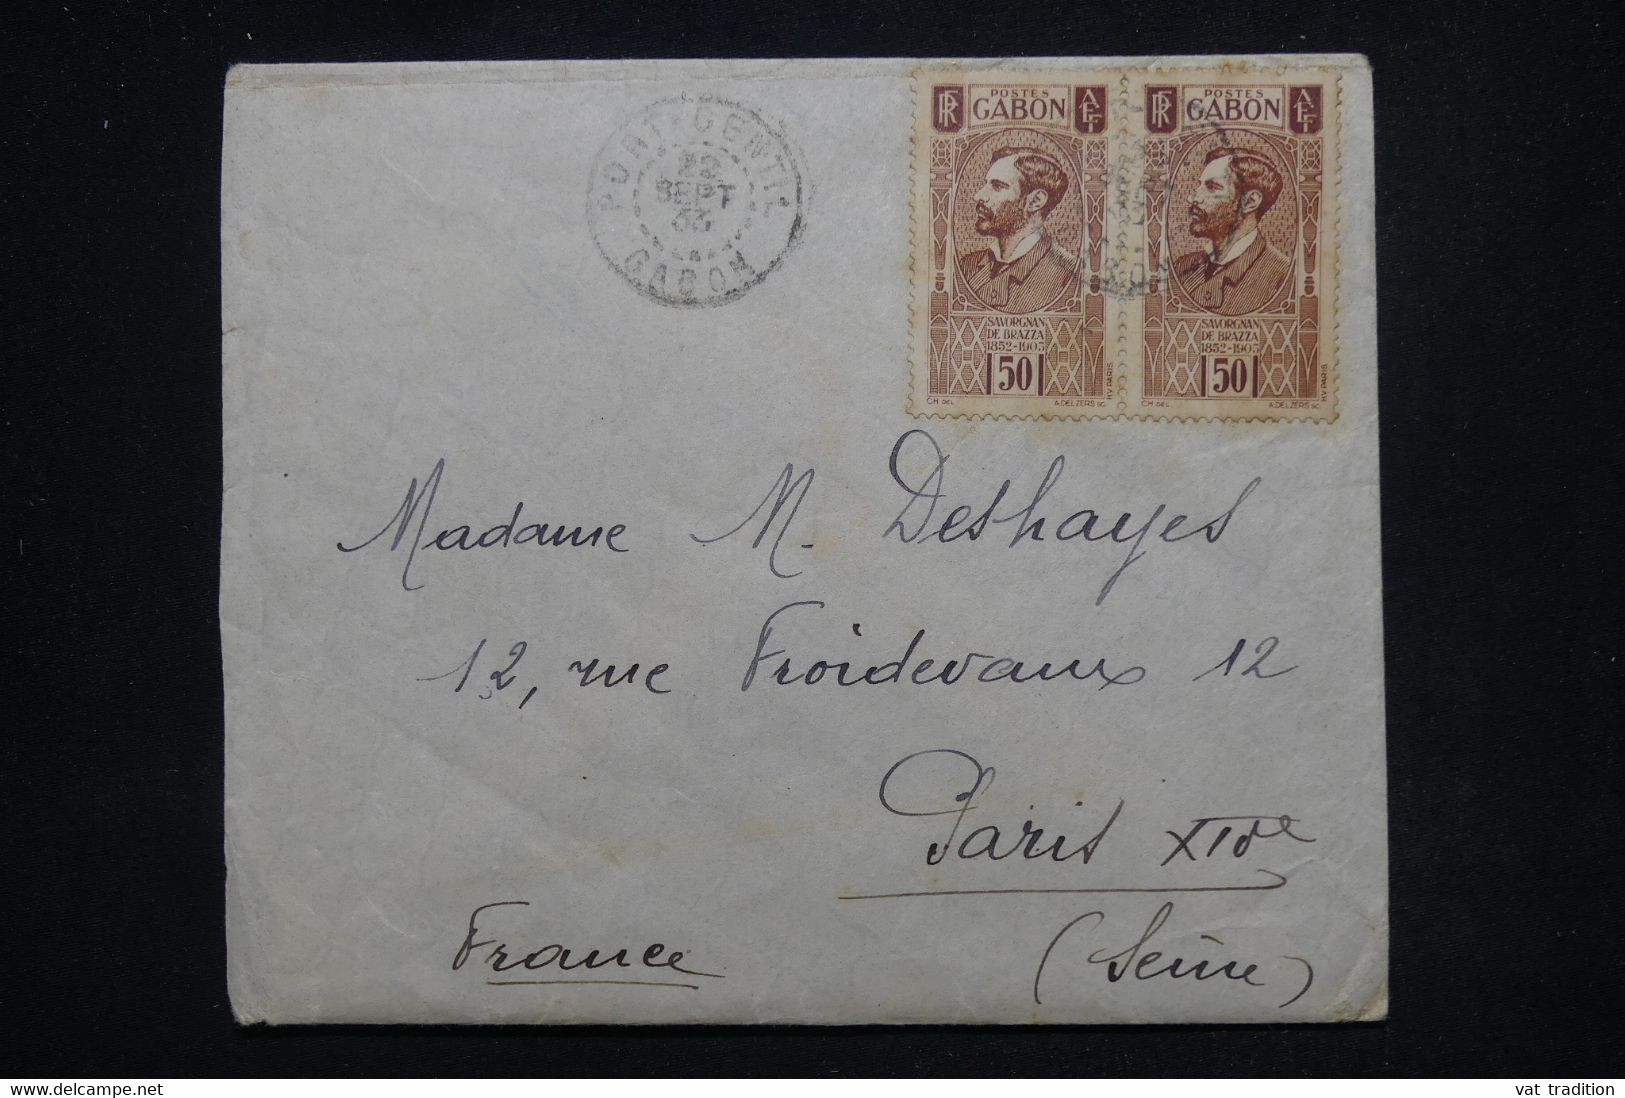 GABON - Enveloppe De Port Gentil Pour Paris En 1933 - L 101863 - Covers & Documents